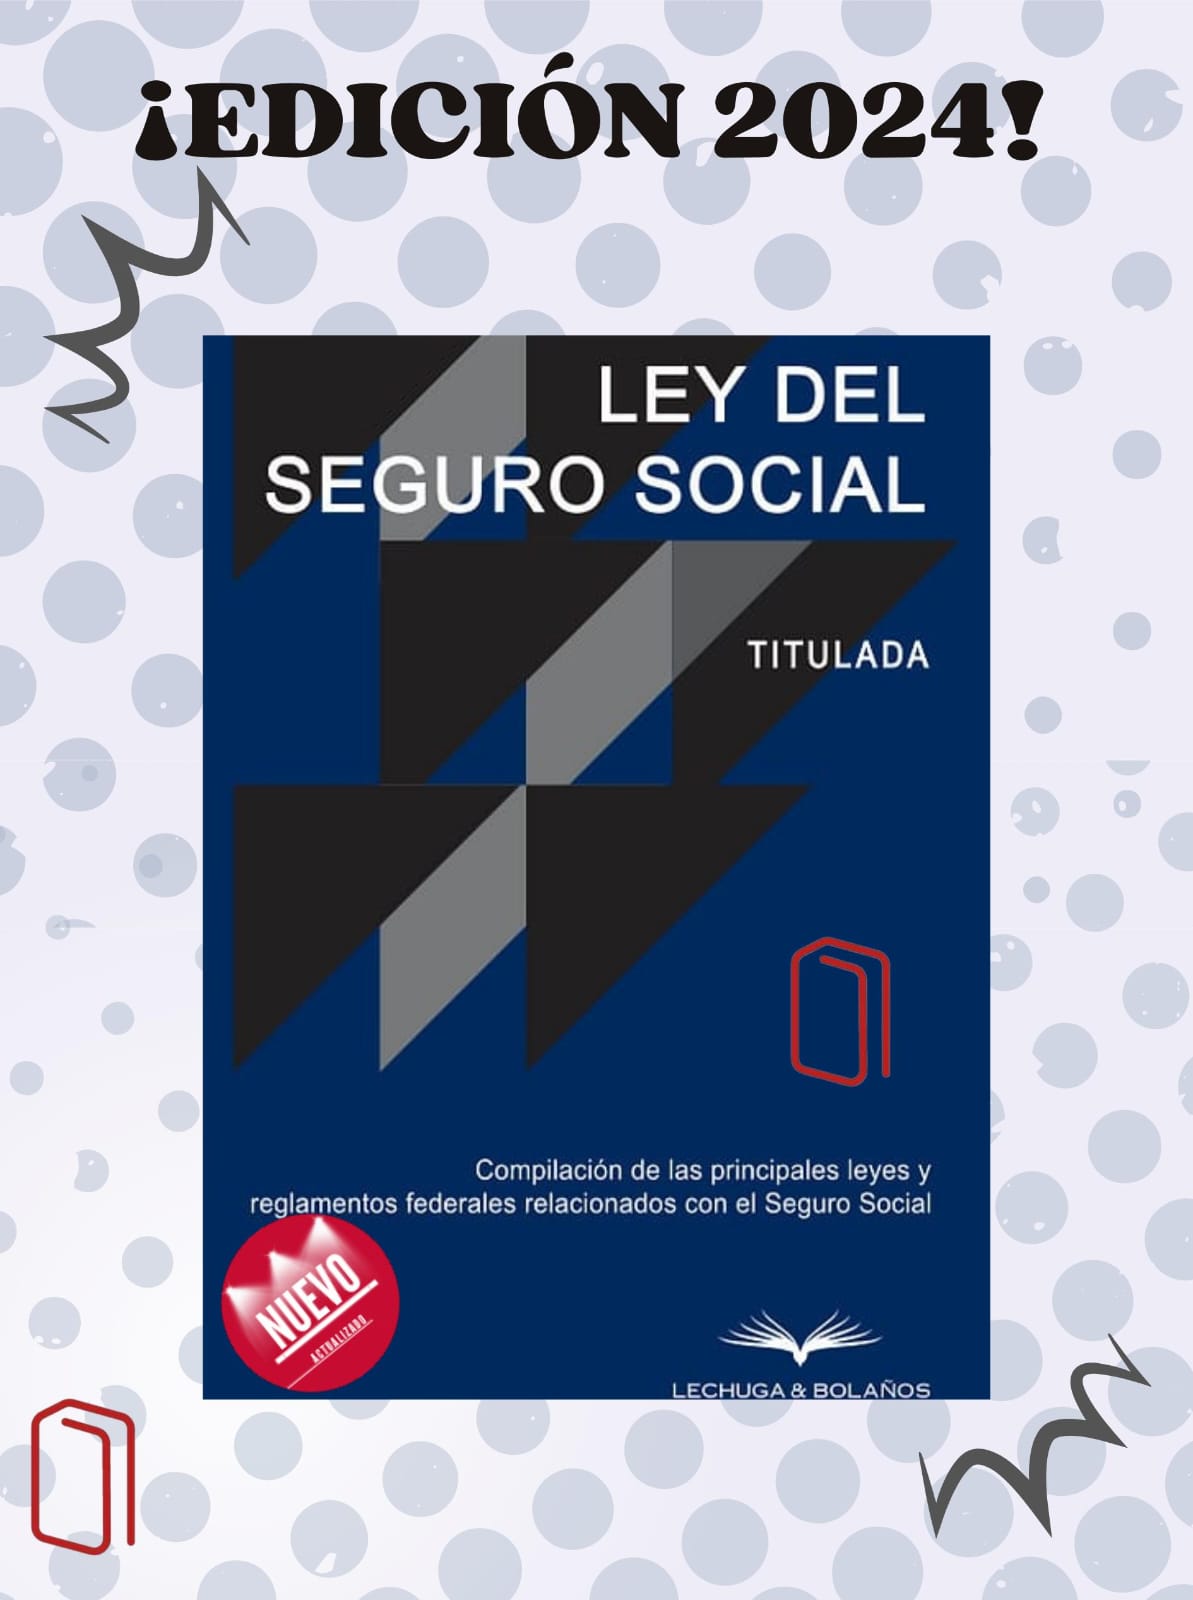 LEY DEL SEGURO SOCIAL 2024 GRUPO CORPORATIVO LUDP & BETTY BOOK